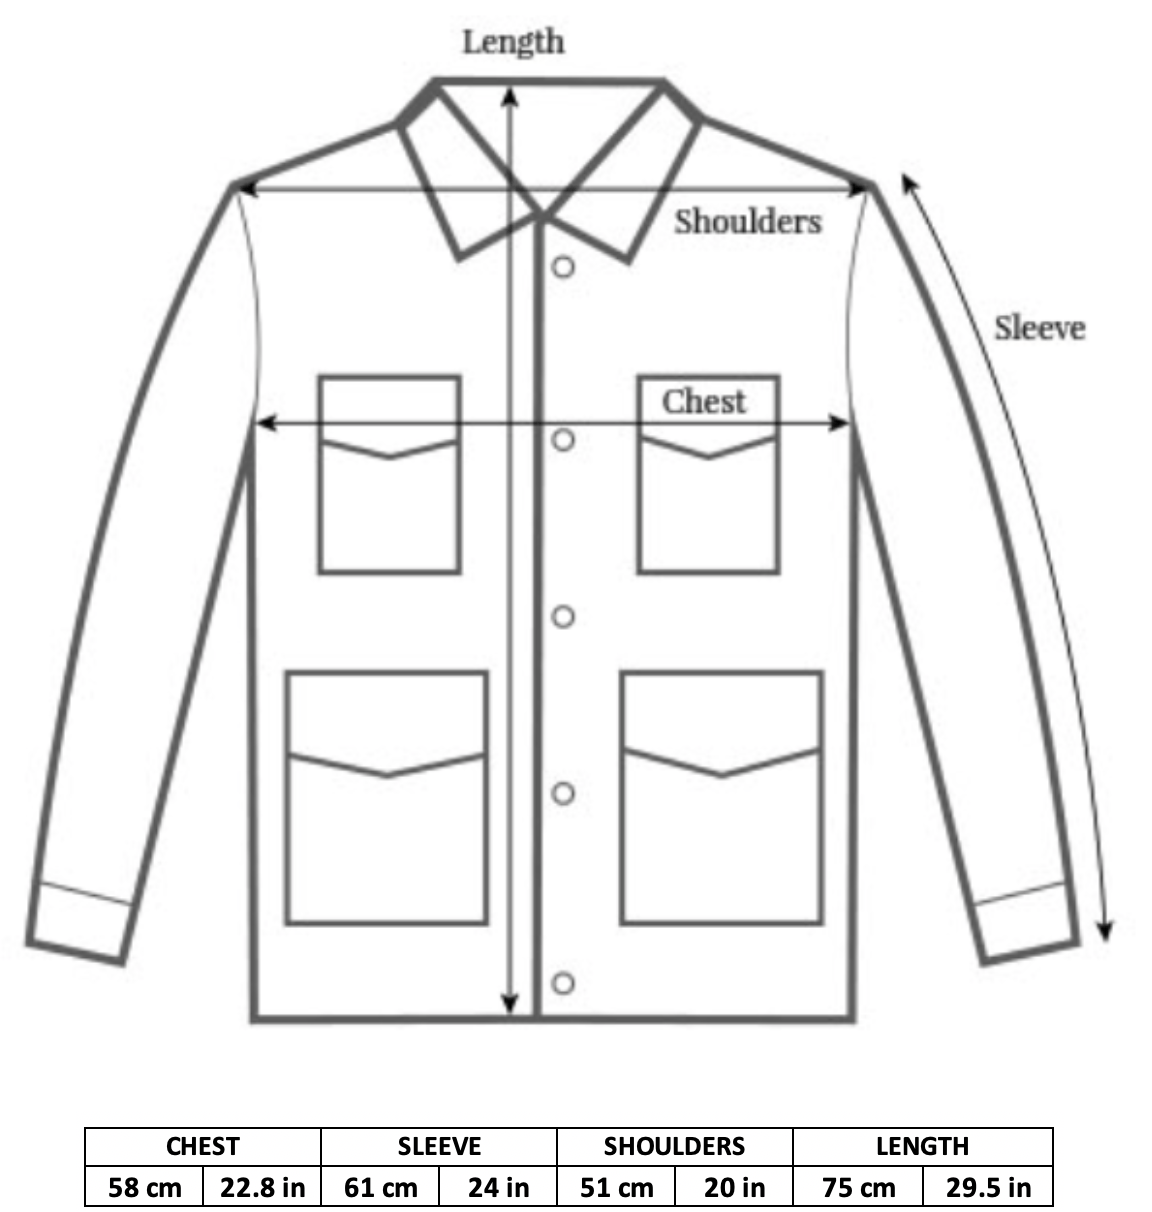 1969 Vintage M-65 Field Jacket Fits Large Short